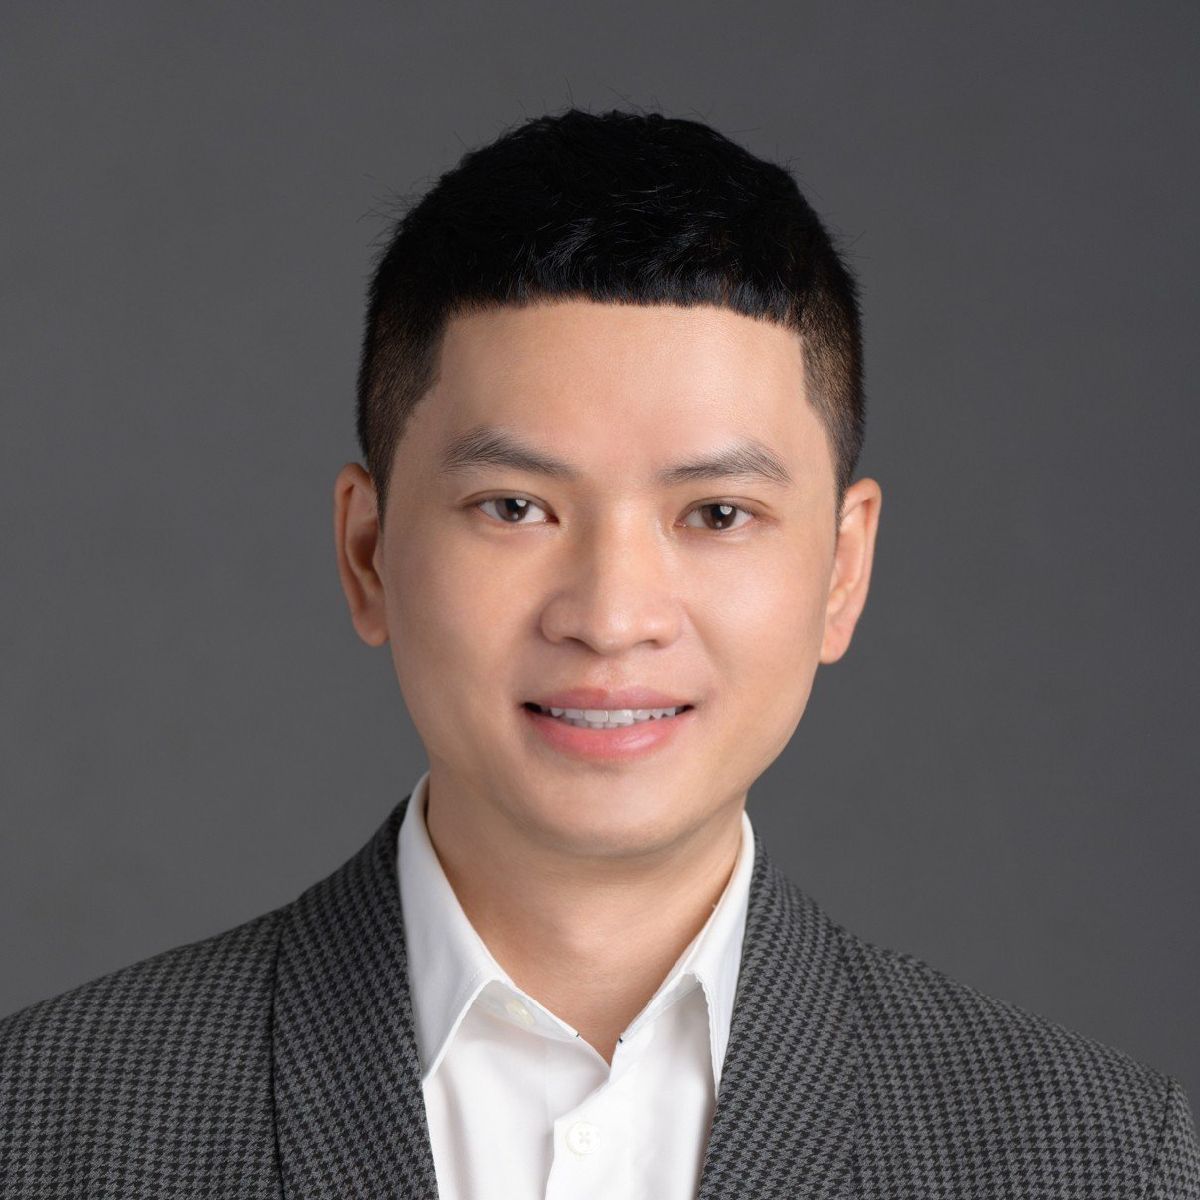 Mr Nguyen Huu Vinh